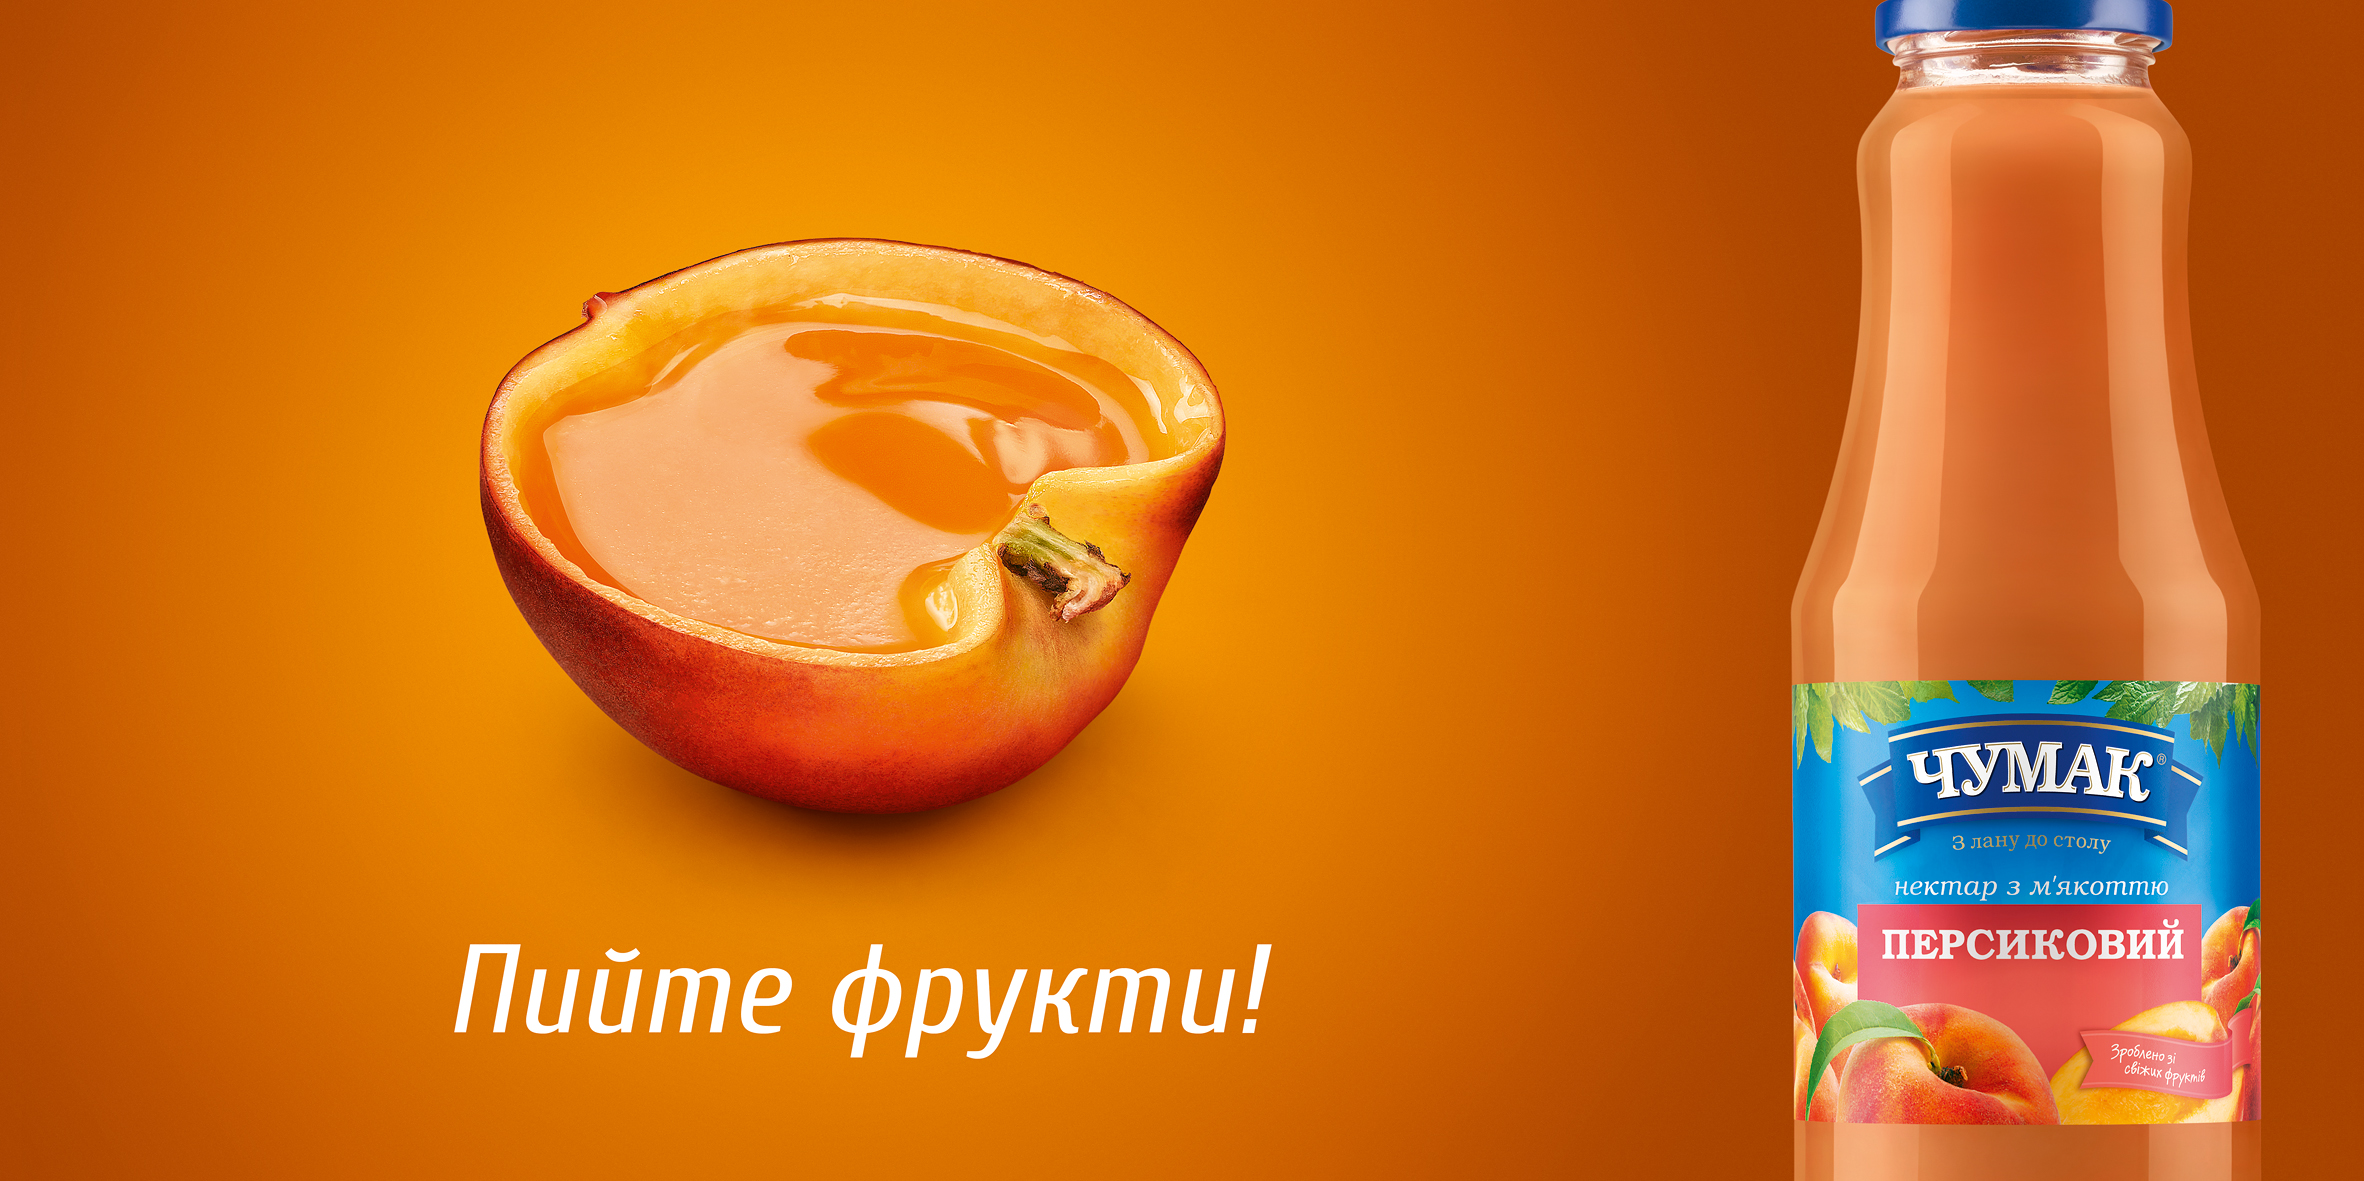 Запуск соков ТМ Чумак, стартовавший на прошлой неделе ТВ роликом, теперь поддерживается в наружной рекламе — для продуктовой кампании 